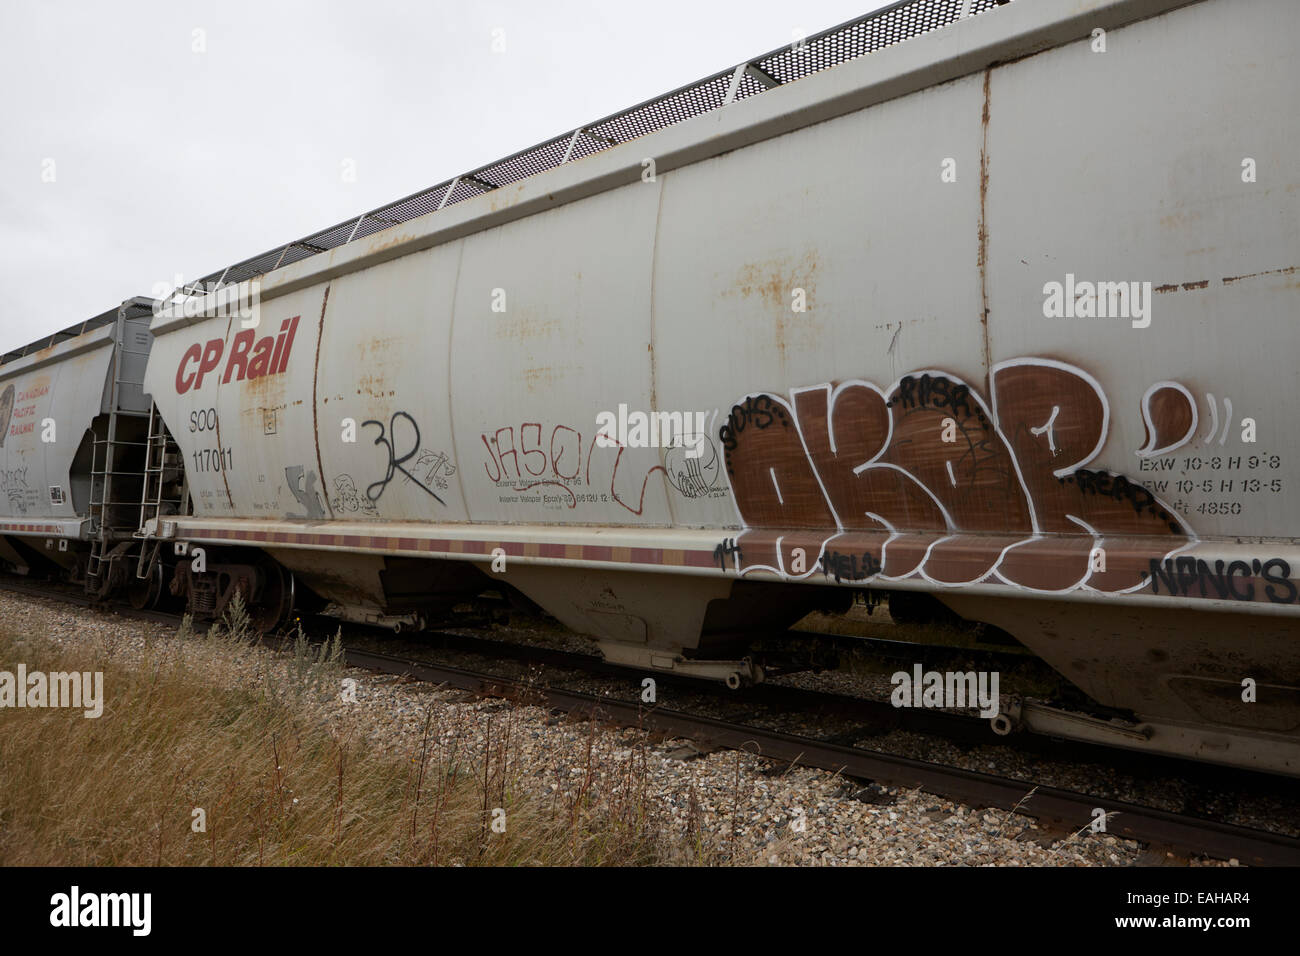 Cp del trasporto ferroviario di merci carrelli granella con tag graffiti su ex Canadian Pacific railway Saskatchewan Canada Foto Stock